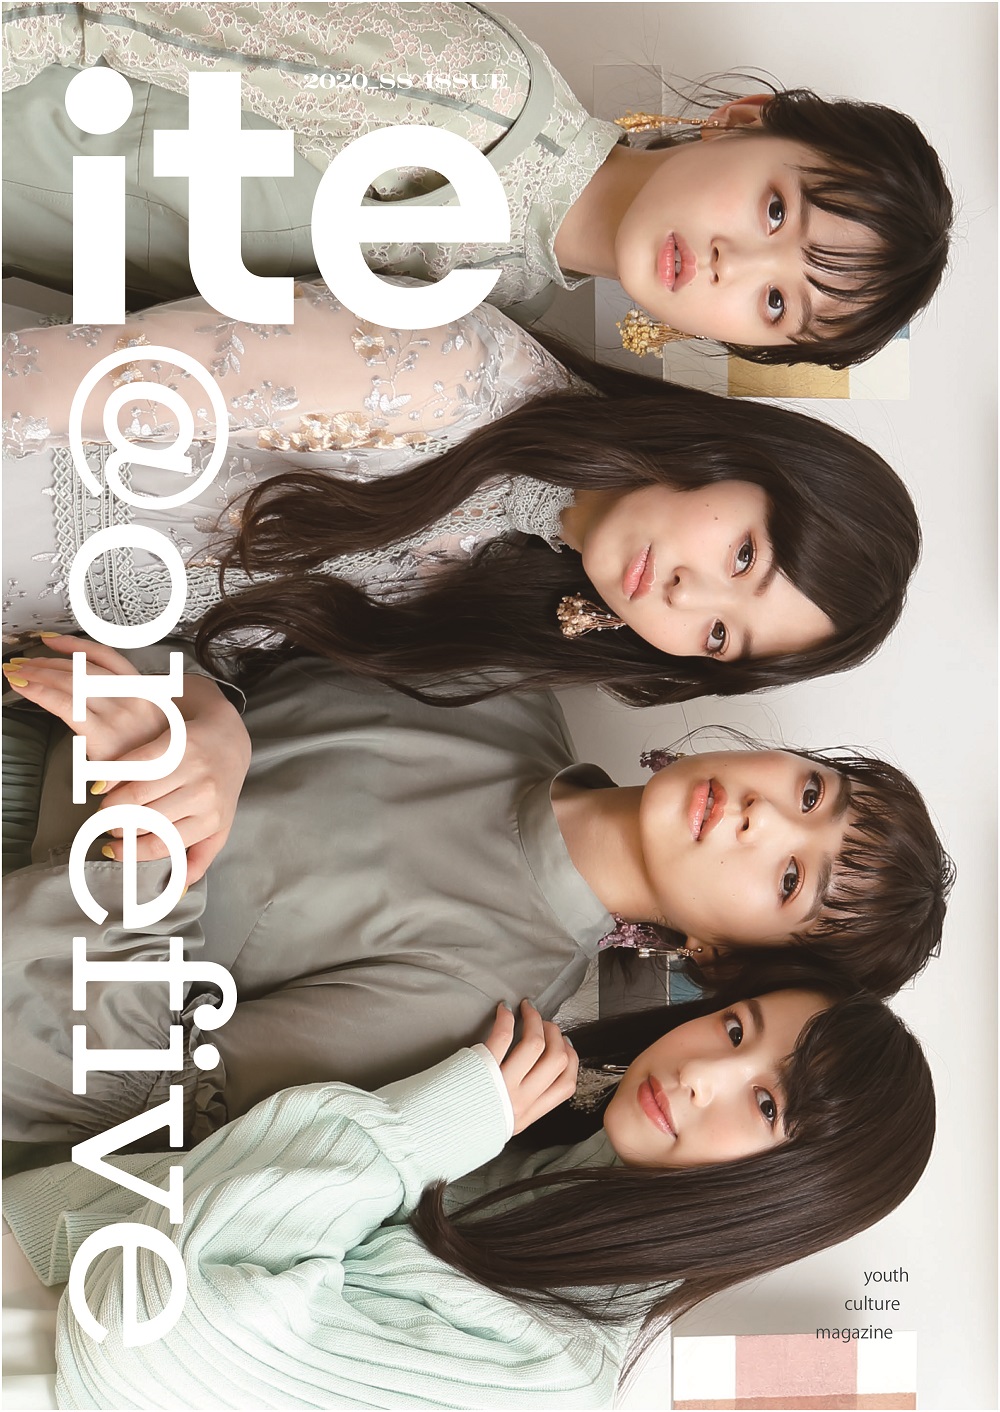 アミューズ所属の新人グループ Onefiveが表紙を飾る 新たなカルチャー誌 Ite 刊行 Qjweb クイック ジャパン ウェブ